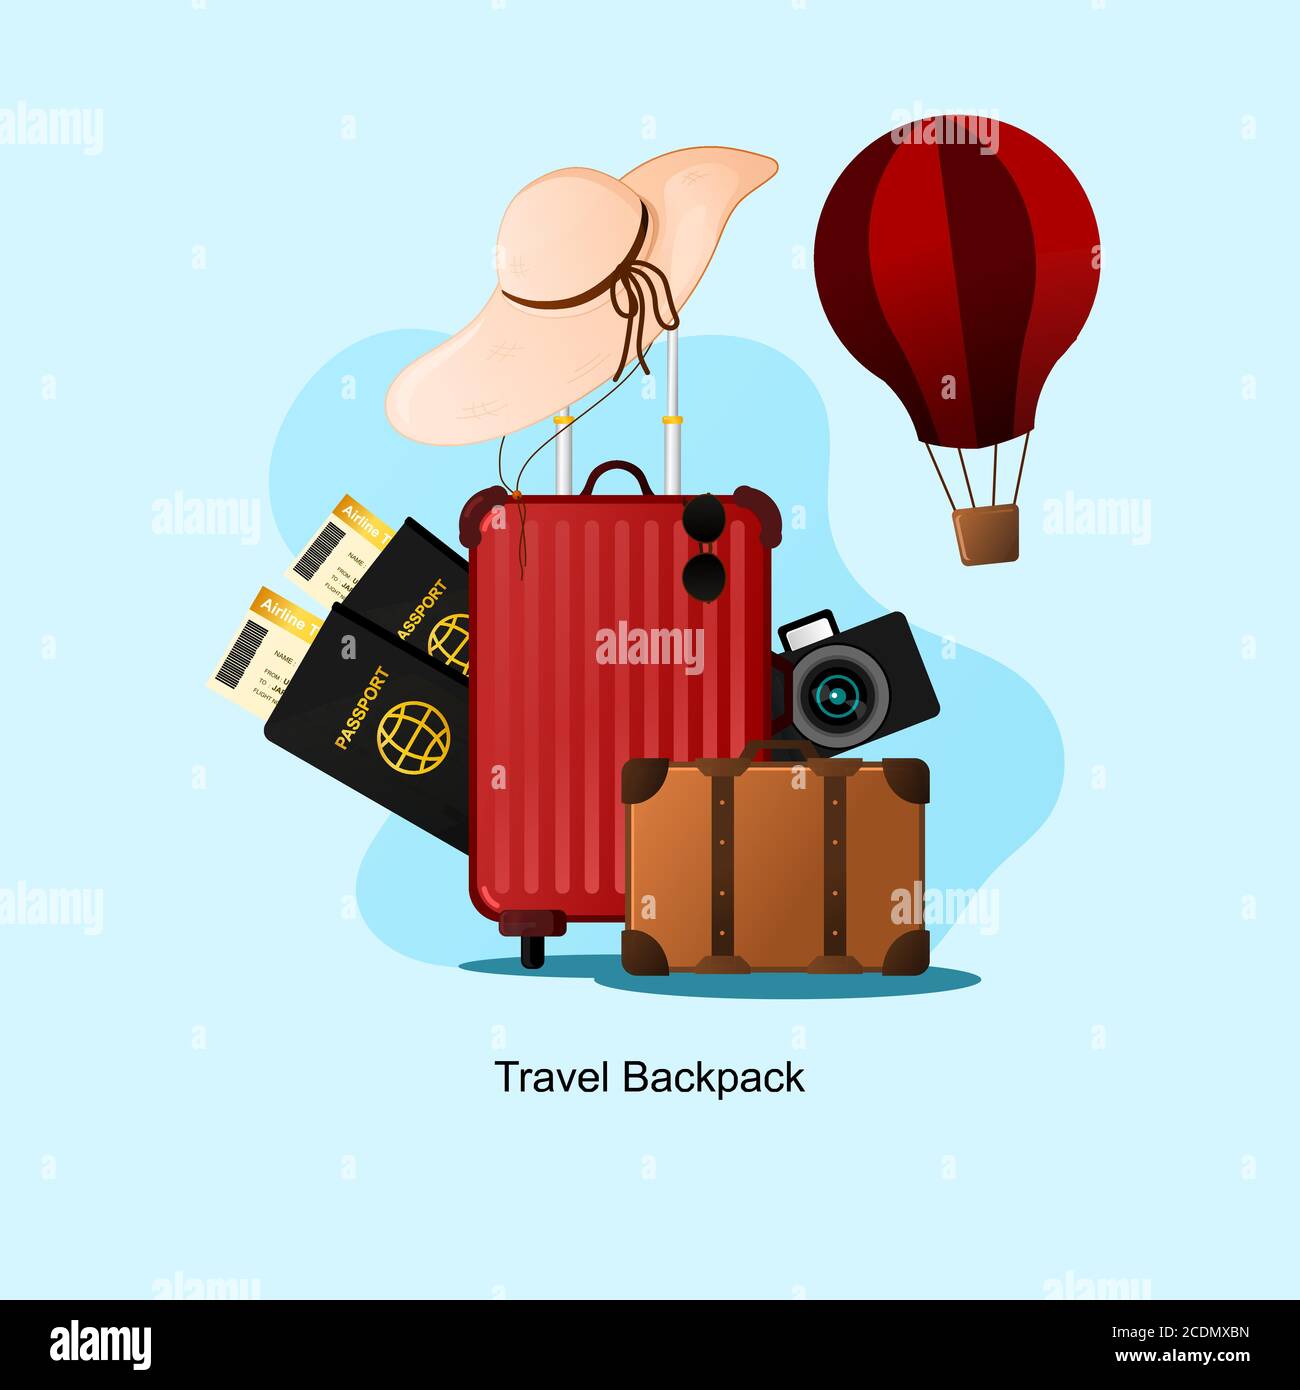 Reise Rucksack Illustration Vektor, relevant für Reisen und Transport bussines wahrscheinlich Vorlage, Werbung, etc, zusätzliche Bild enthalten Schicht für Stock Vektor